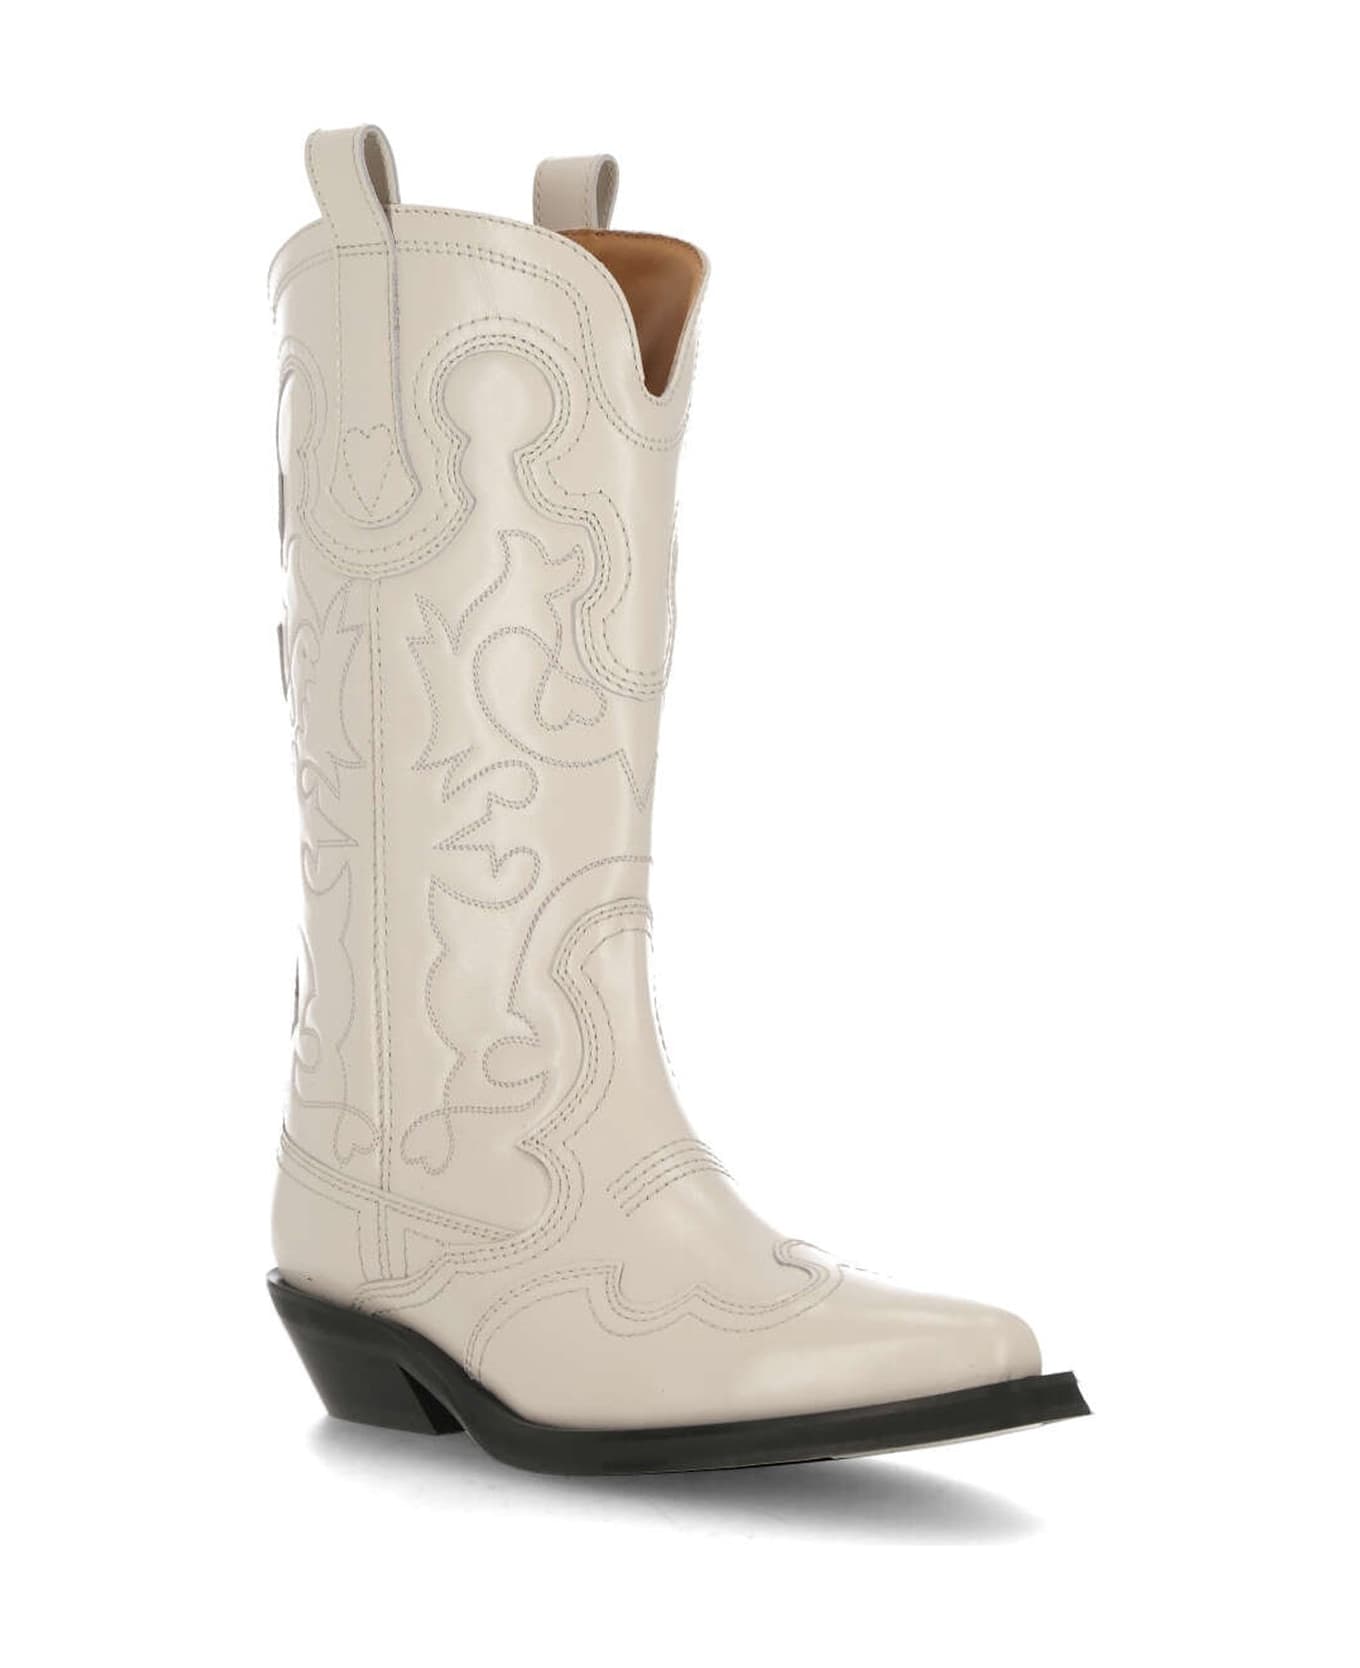 Ganni Western Boots - White